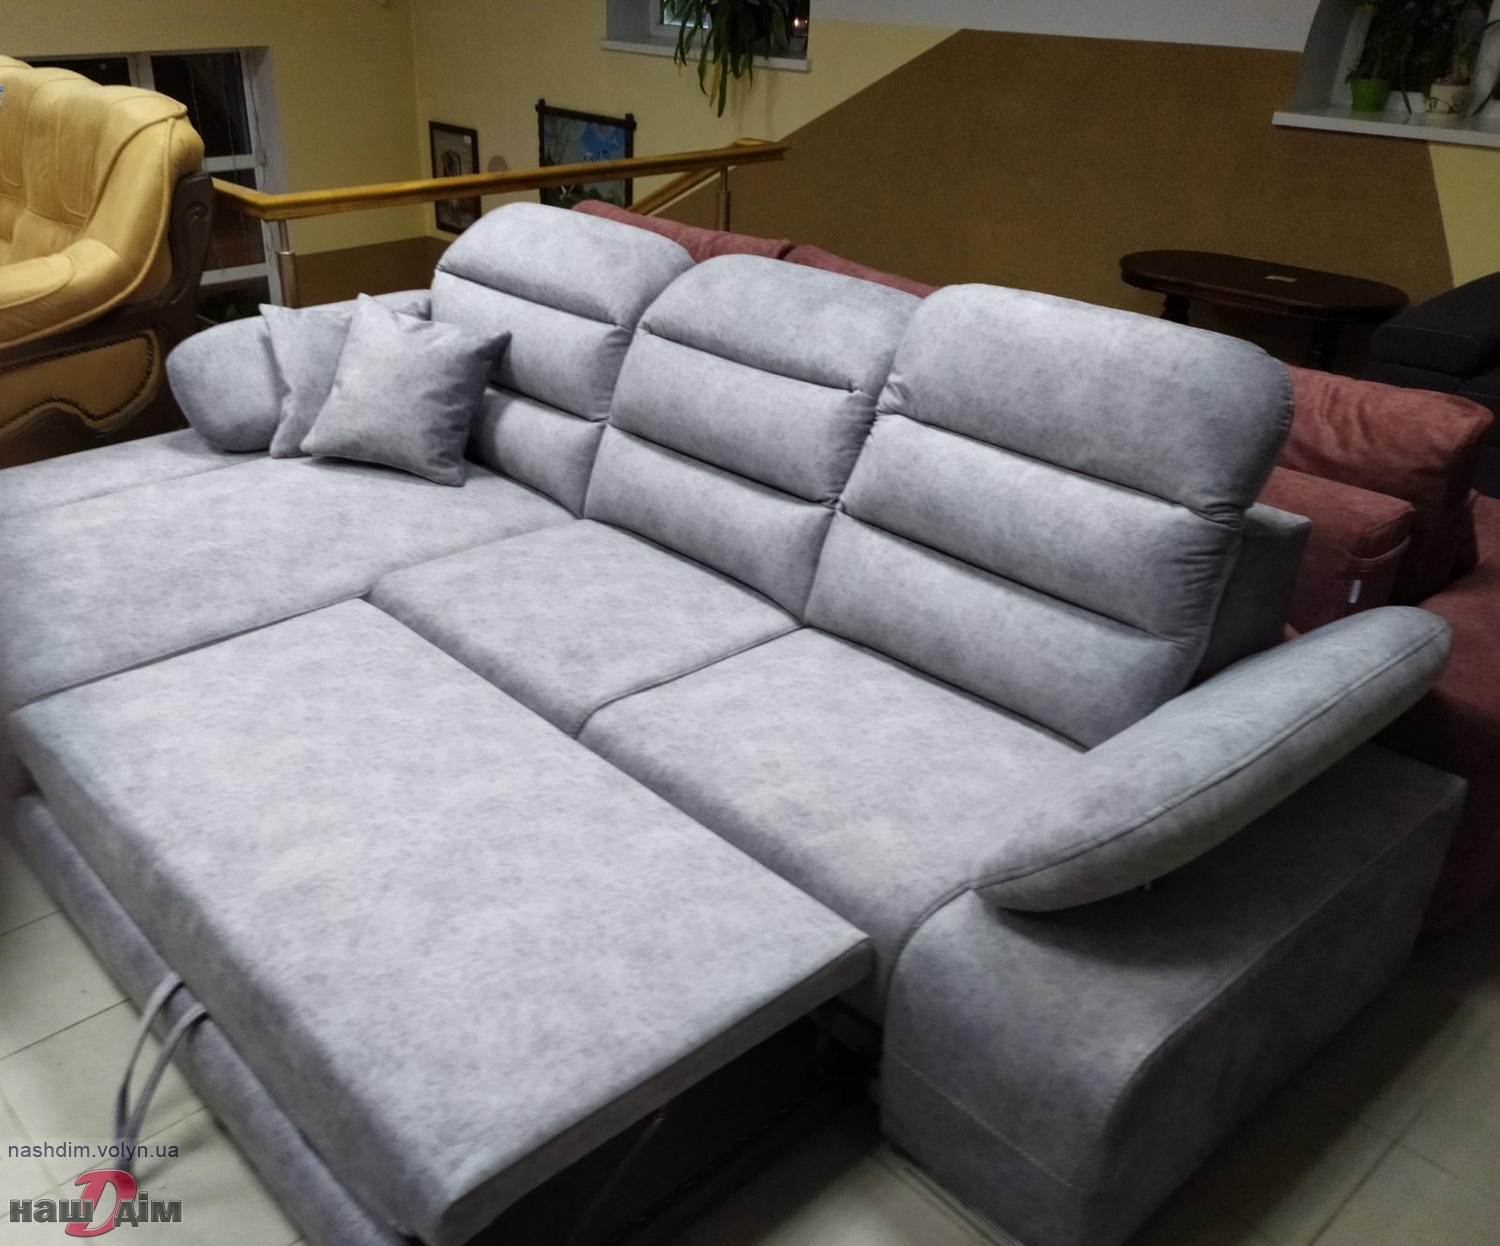 ЕТРО кутовий диван від Даніро ID558-2 матеріали та колір